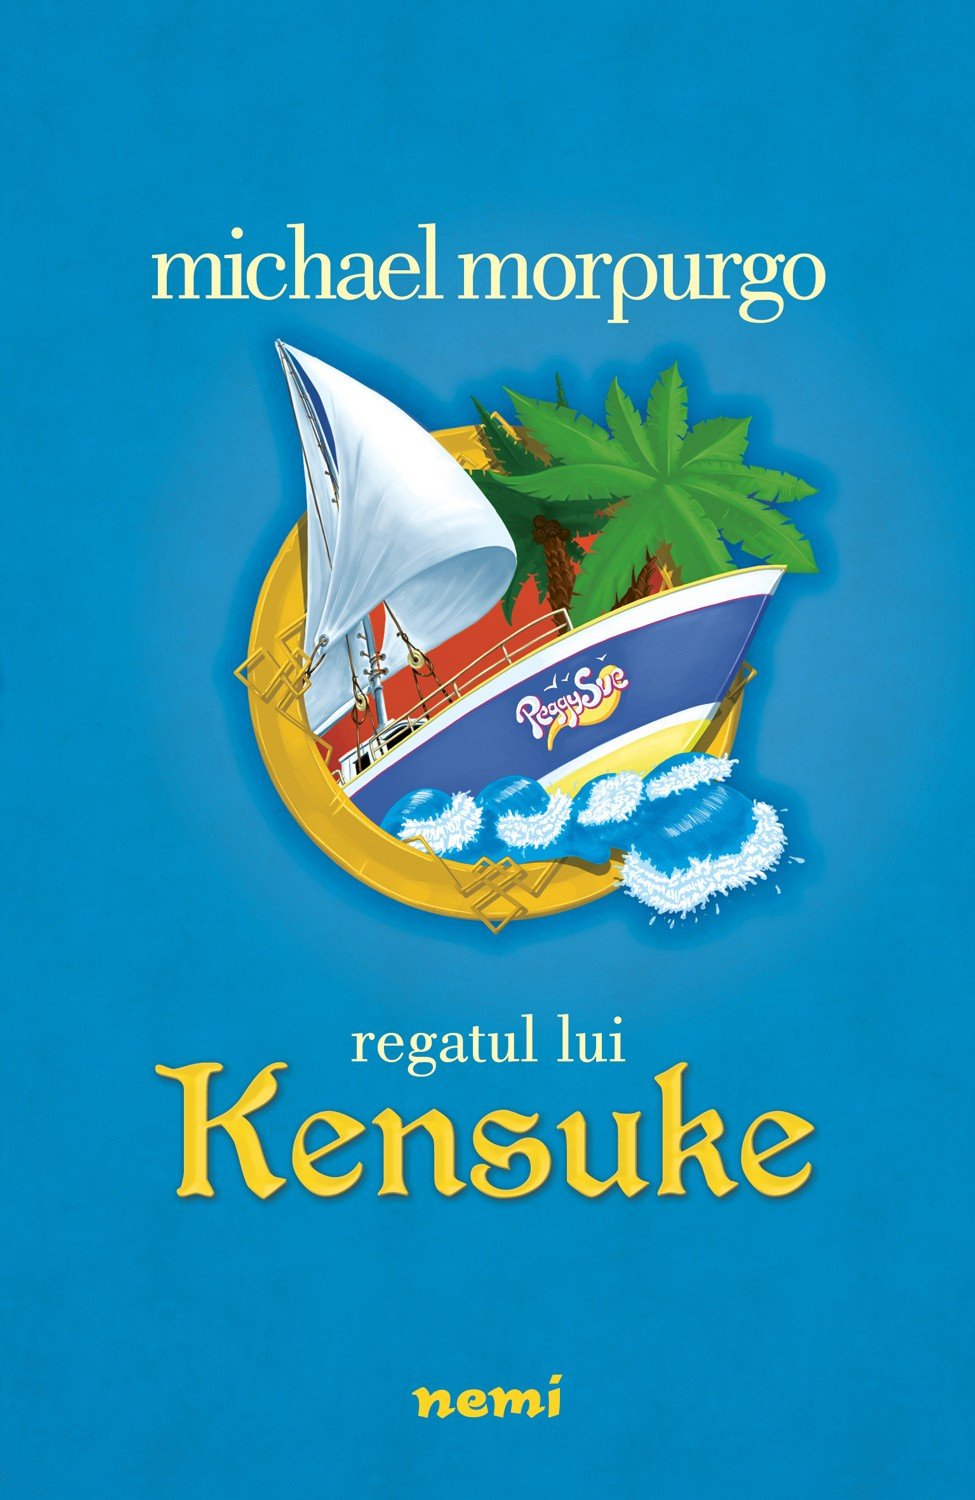 eBook Regatul lui Kensuke - Michael Morpurgo